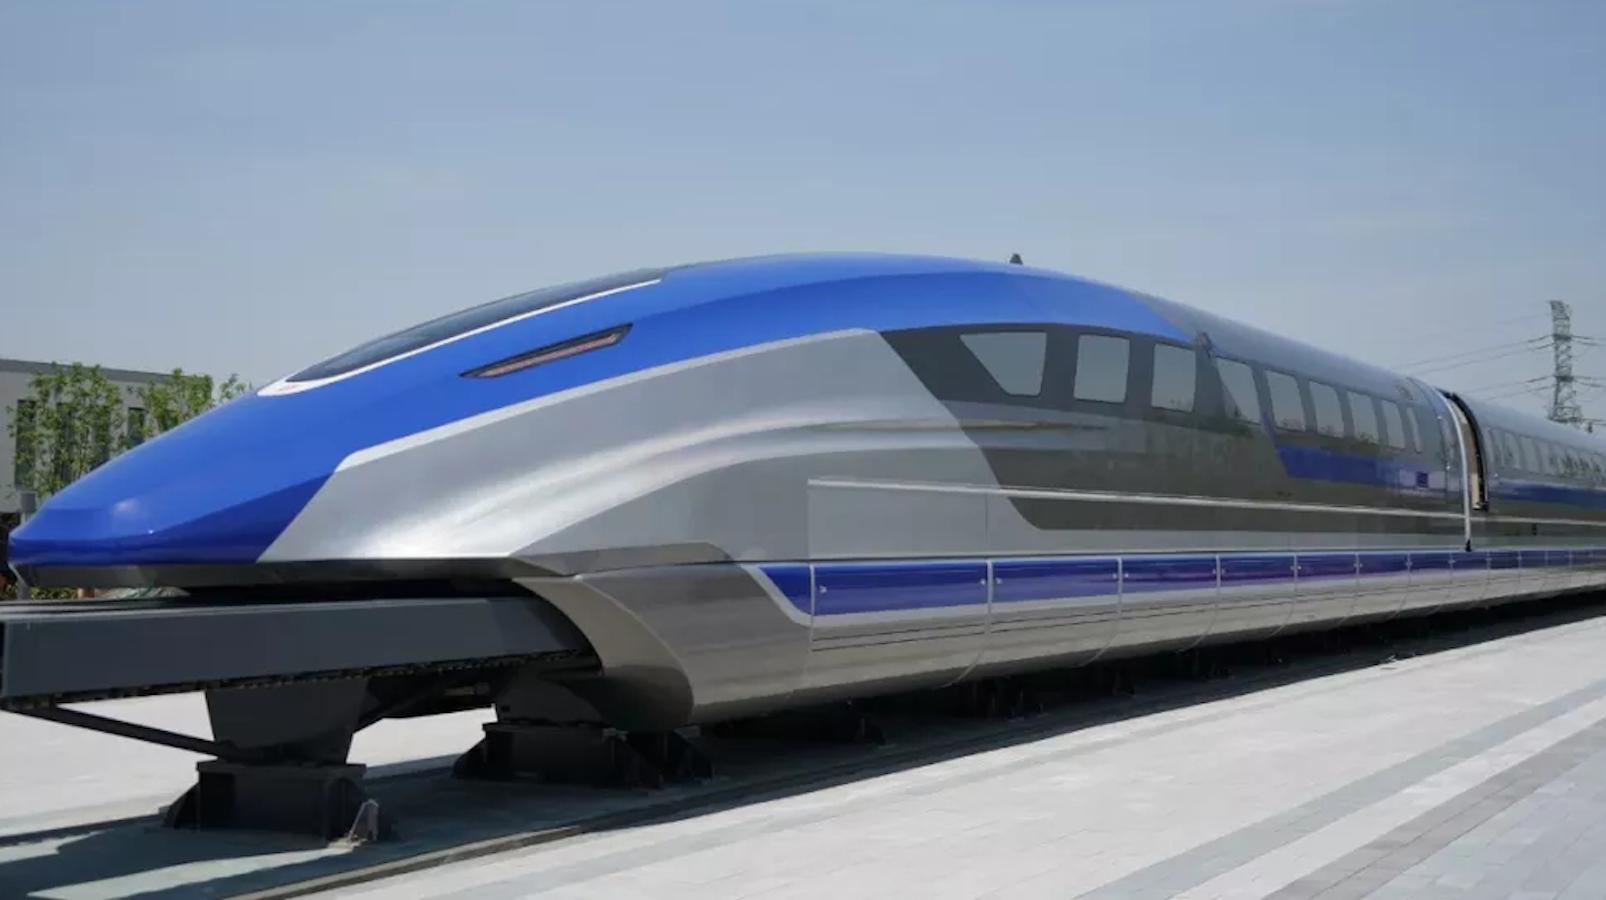 चीन देश में 620 किलोमीटर प्रति घंटे की रफ़्तार से चलने वाली  मेगलेव का  ट्रेन प्रोटोटाइप है